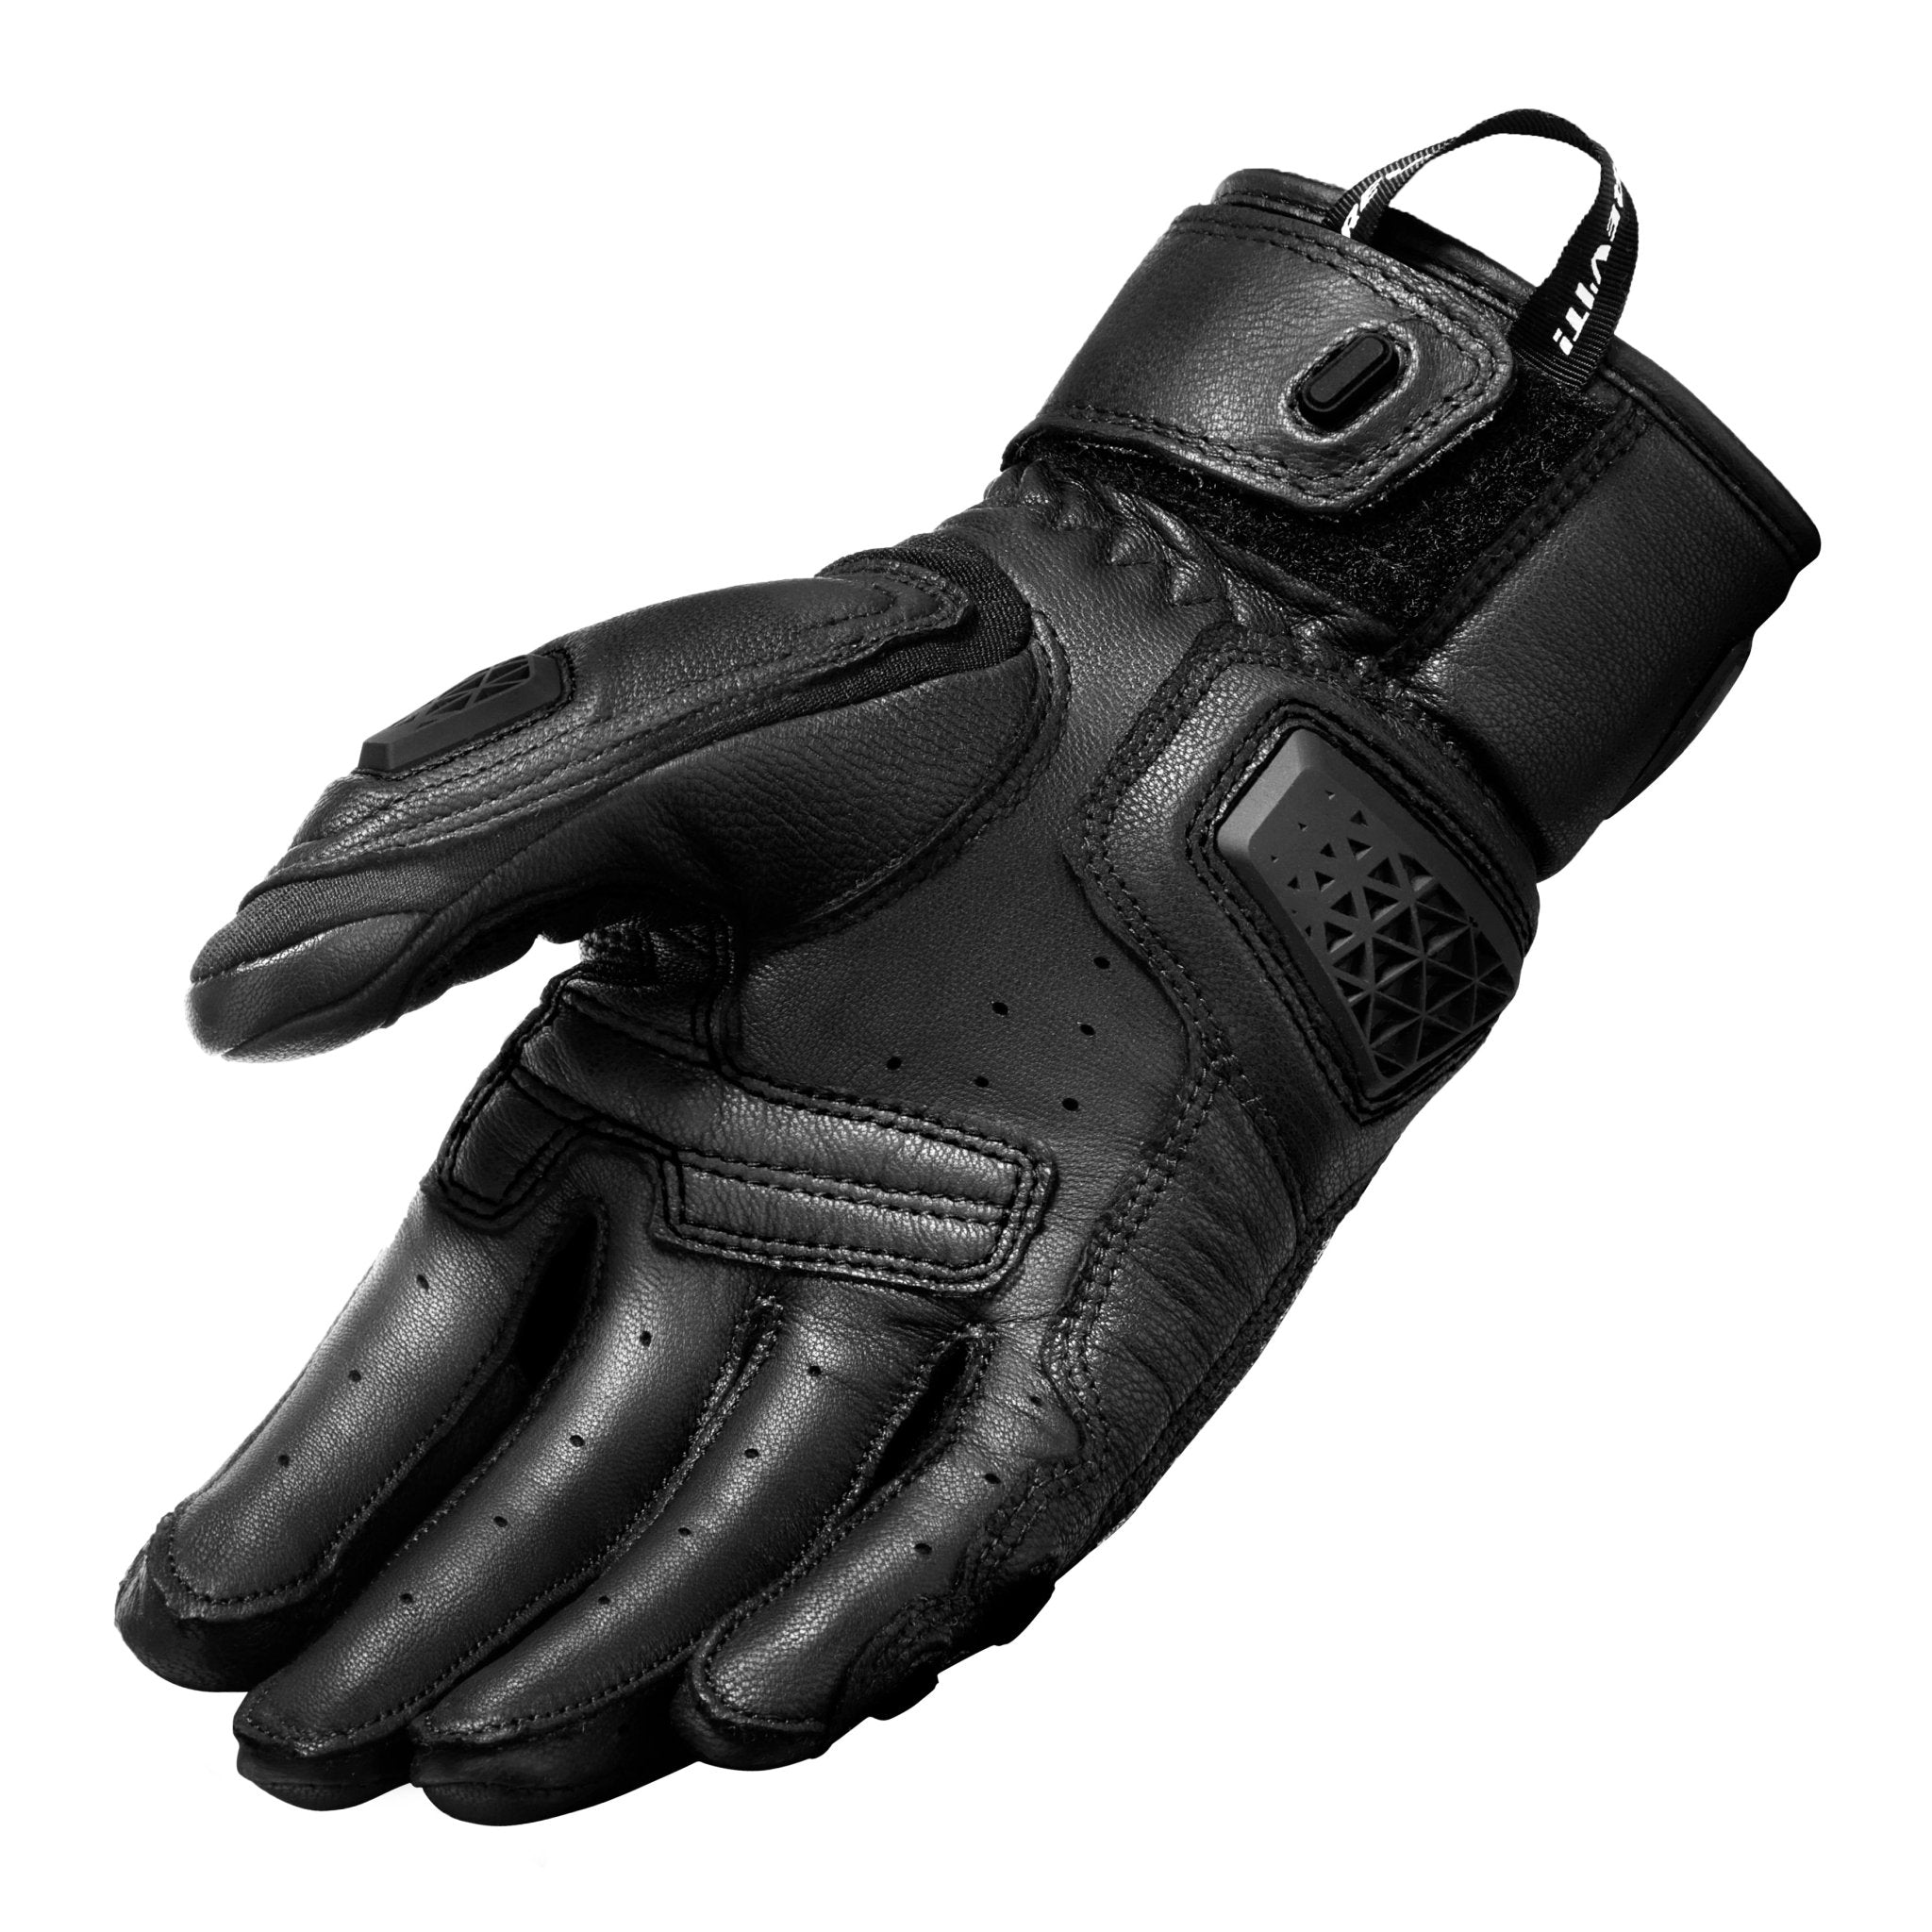 REV'IT! | Sand 4 Men's Gloves - Black - Gloves - Peak Moto